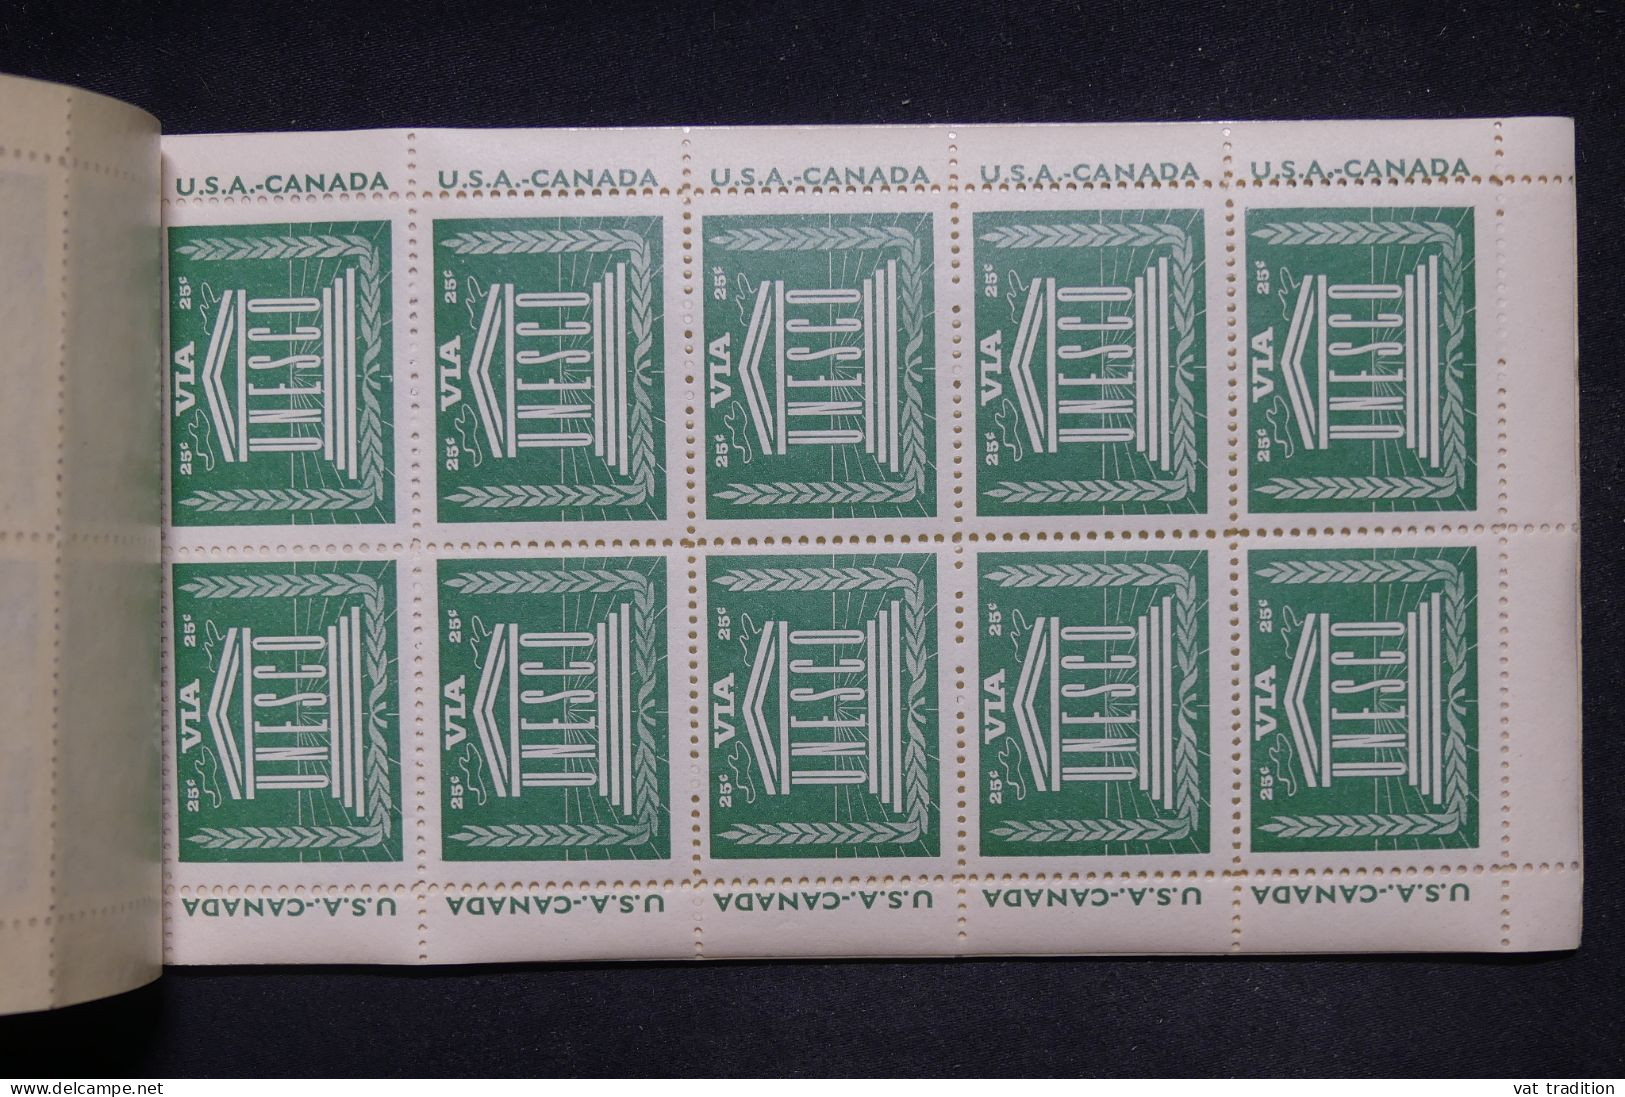 FRANCE - Carnet De L'Unesco Avec Vignettes - L 147898 - Blocks & Sheetlets & Booklets